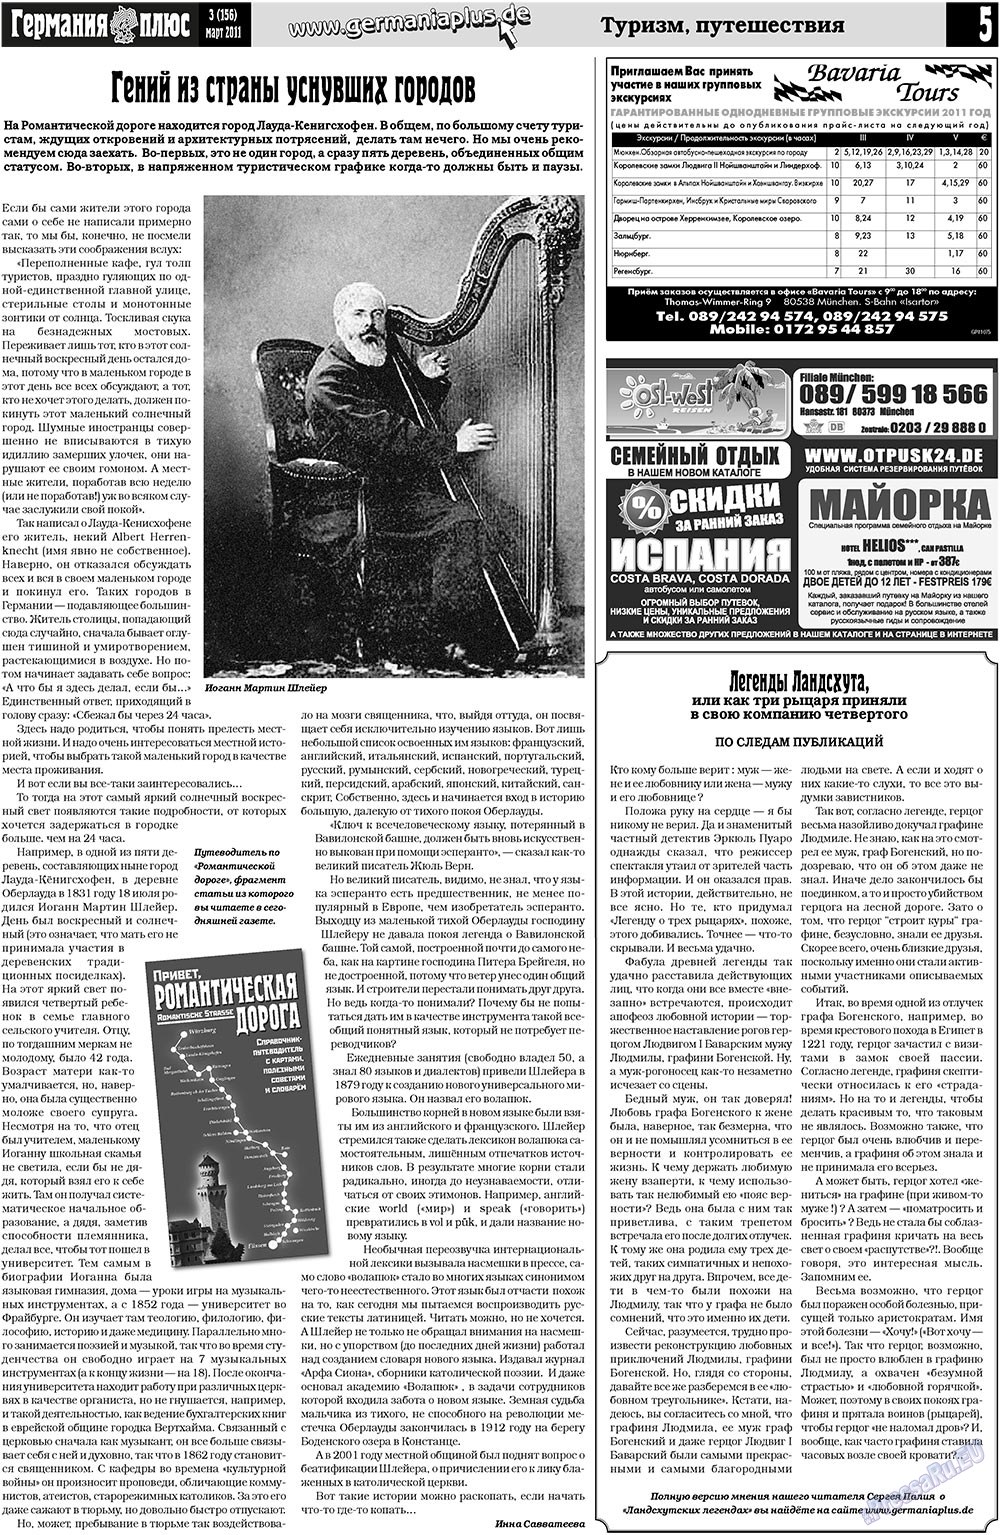 Германия плюс (газета). 2011 год, номер 3, стр. 5